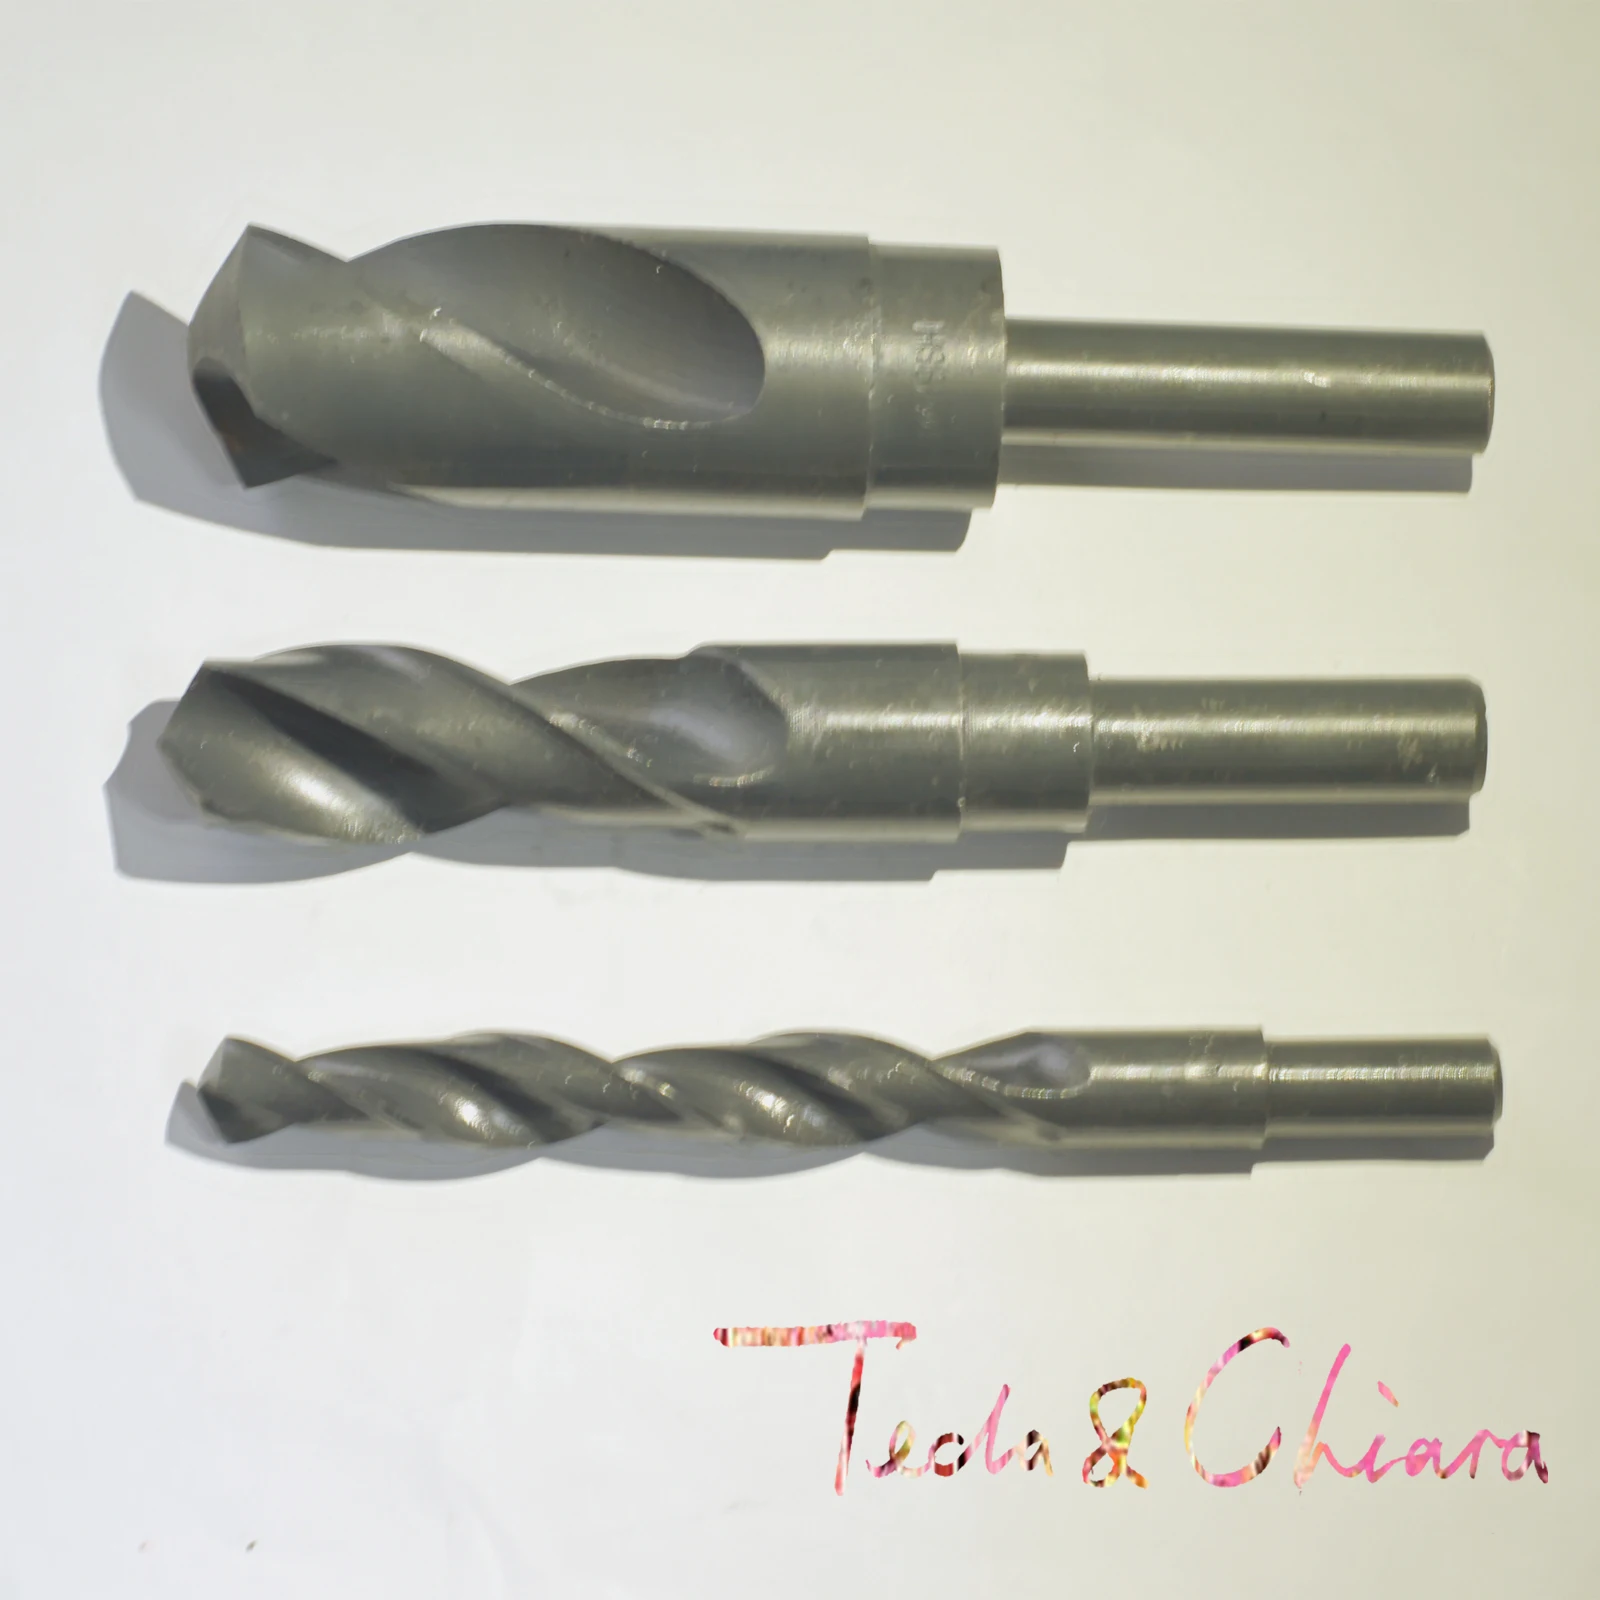 

14.1mm 14.2mm 14.3mm 14.4mm 14.5mm HSS Reduced Straight Crank Twist Drill Bit Shank Dia 12.7mm 1/2 inch 14.1 14.2 14.3 14.4 14.5